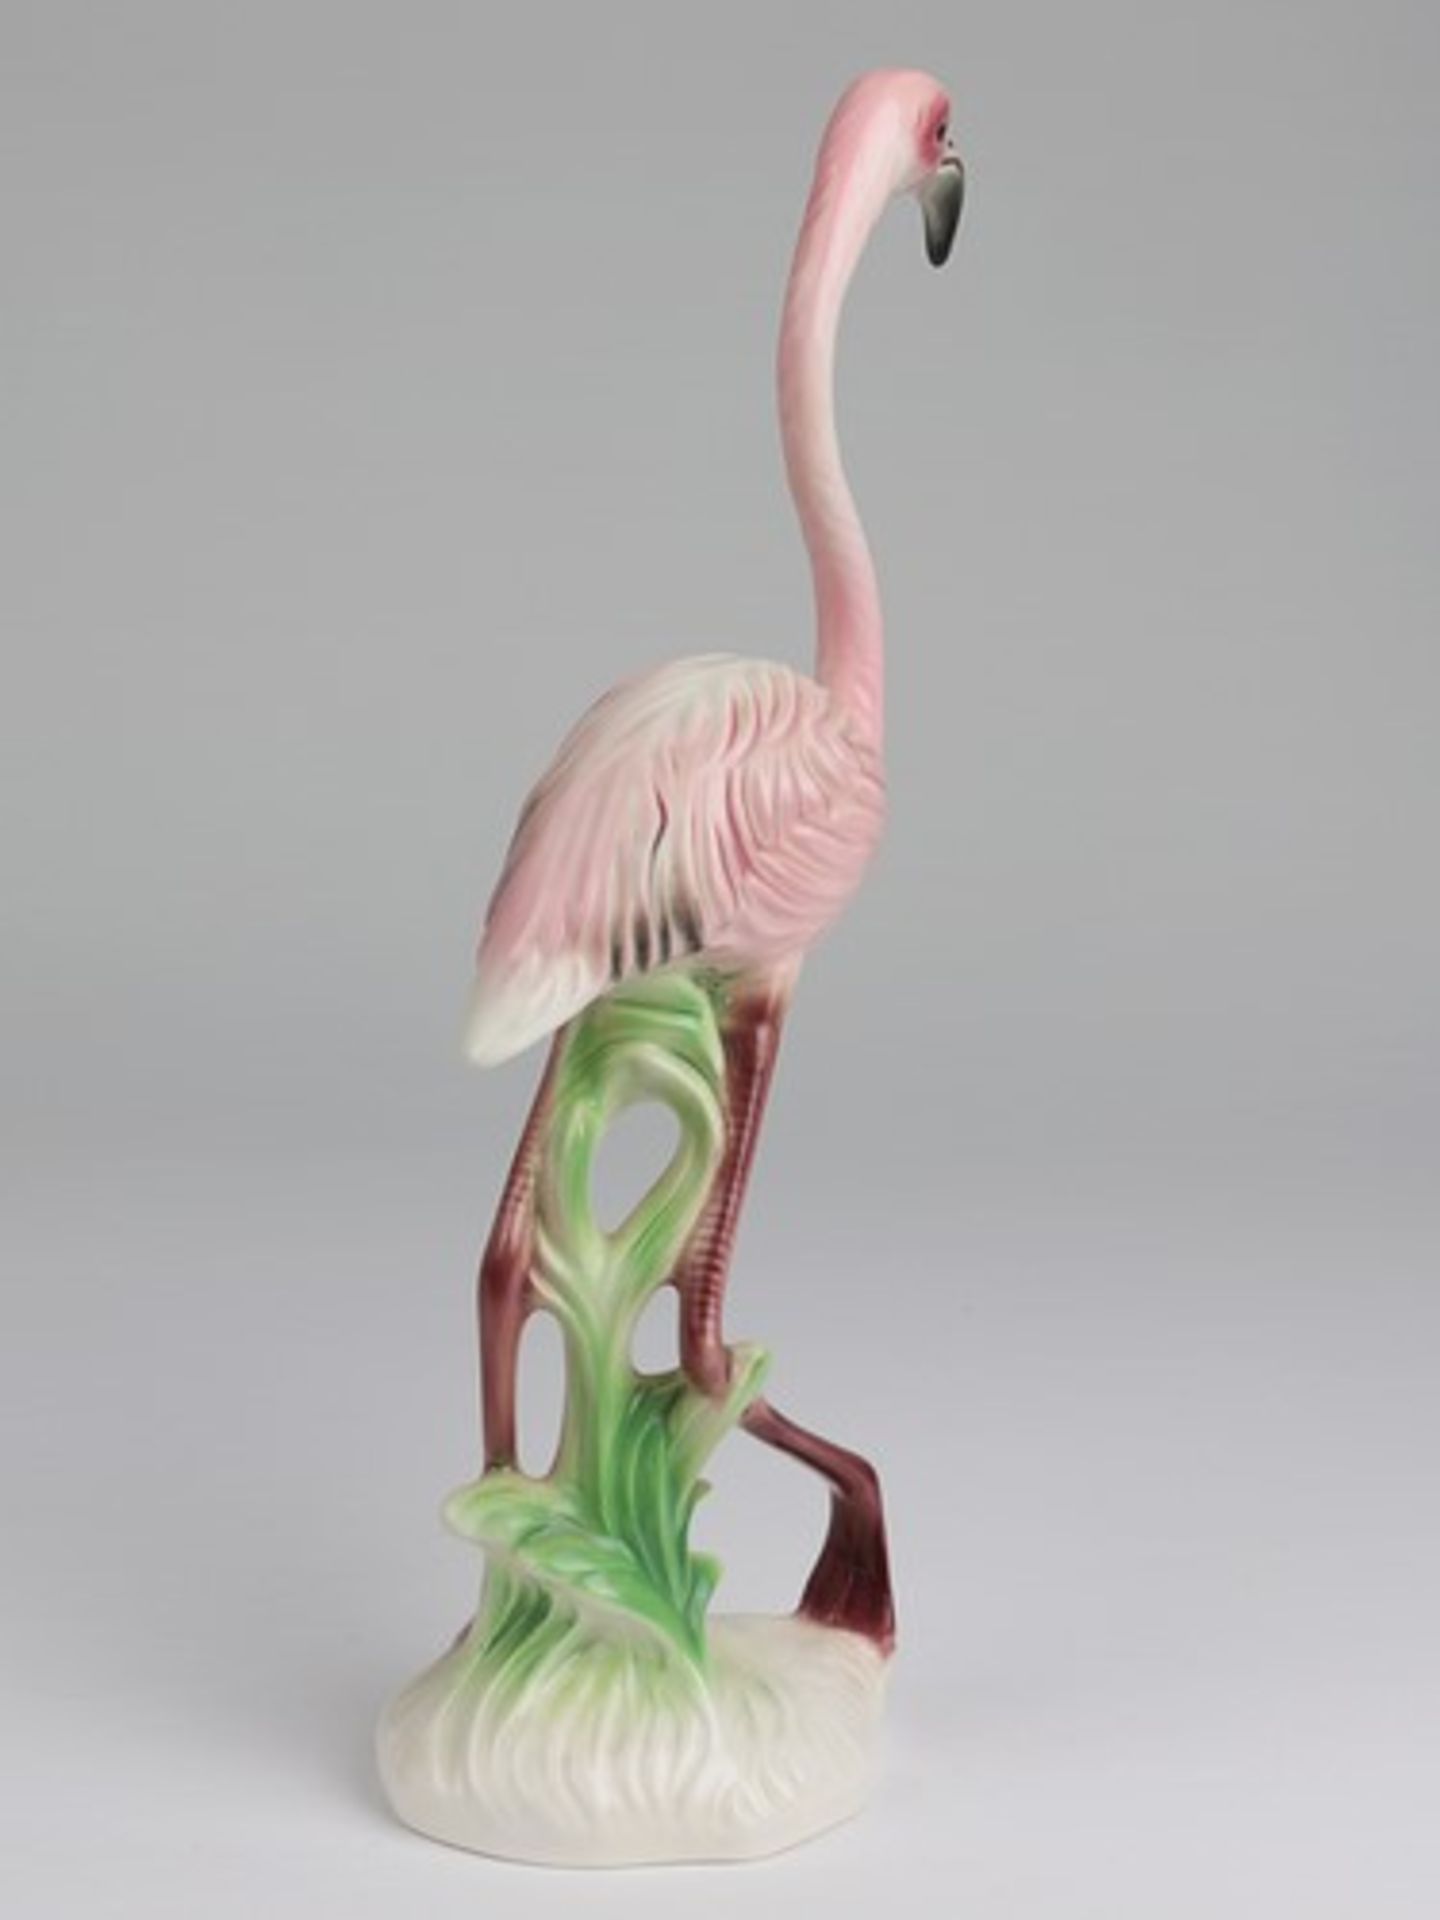 Goebel - FigurStempelmarke, Nr. 38 609 26, vollplast. Flamingo auf naturalist. Plinthe, farbig - Bild 2 aus 6